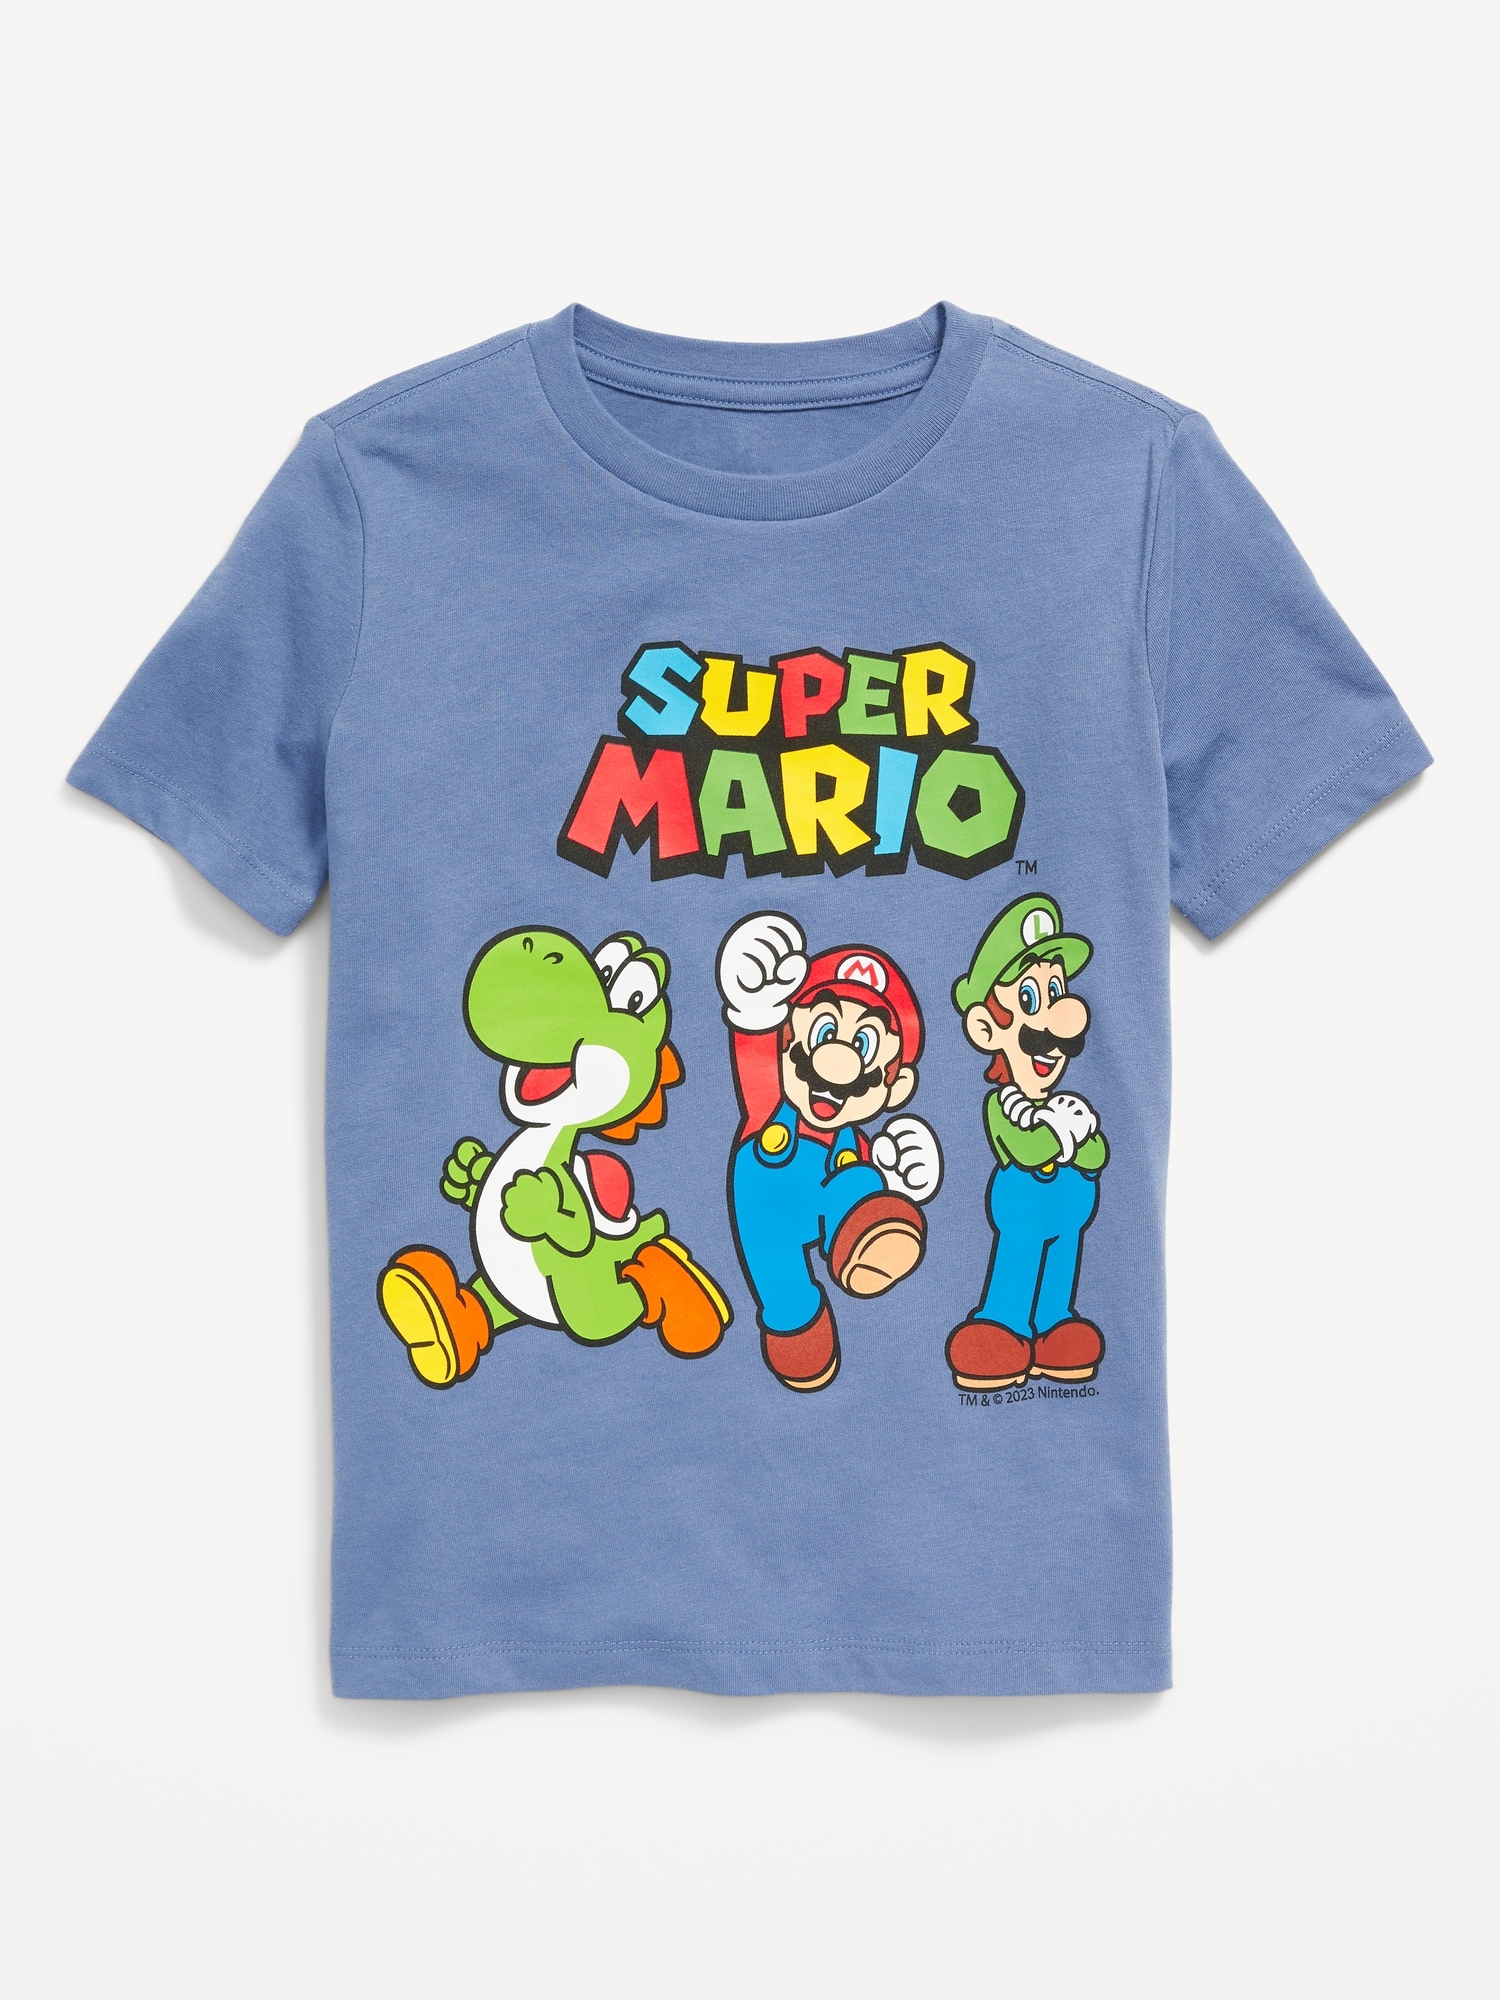 Fremskynde side grill Super Mario™ Gender-Neutral Graphic T-Shirt for Kids | Old Navy